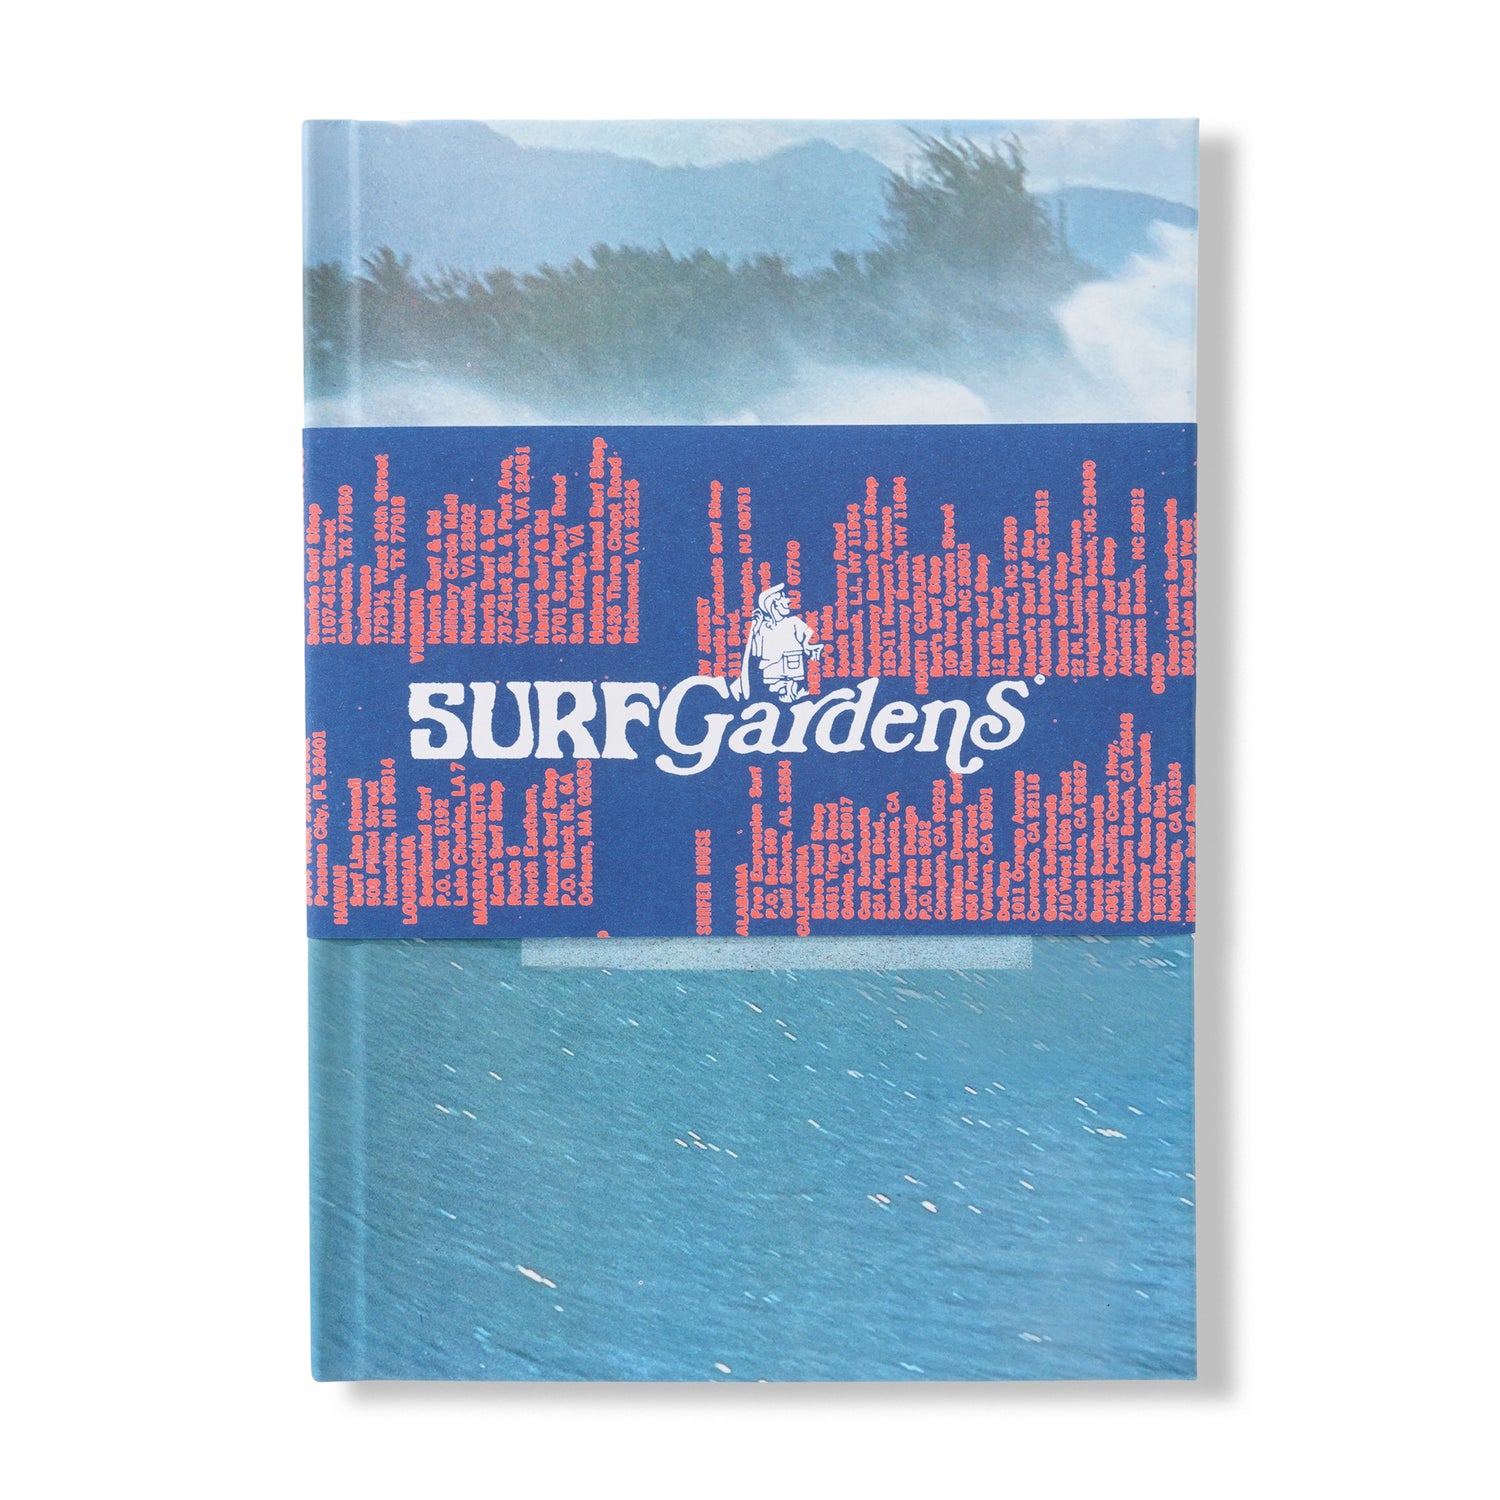 Surf Gardens Book